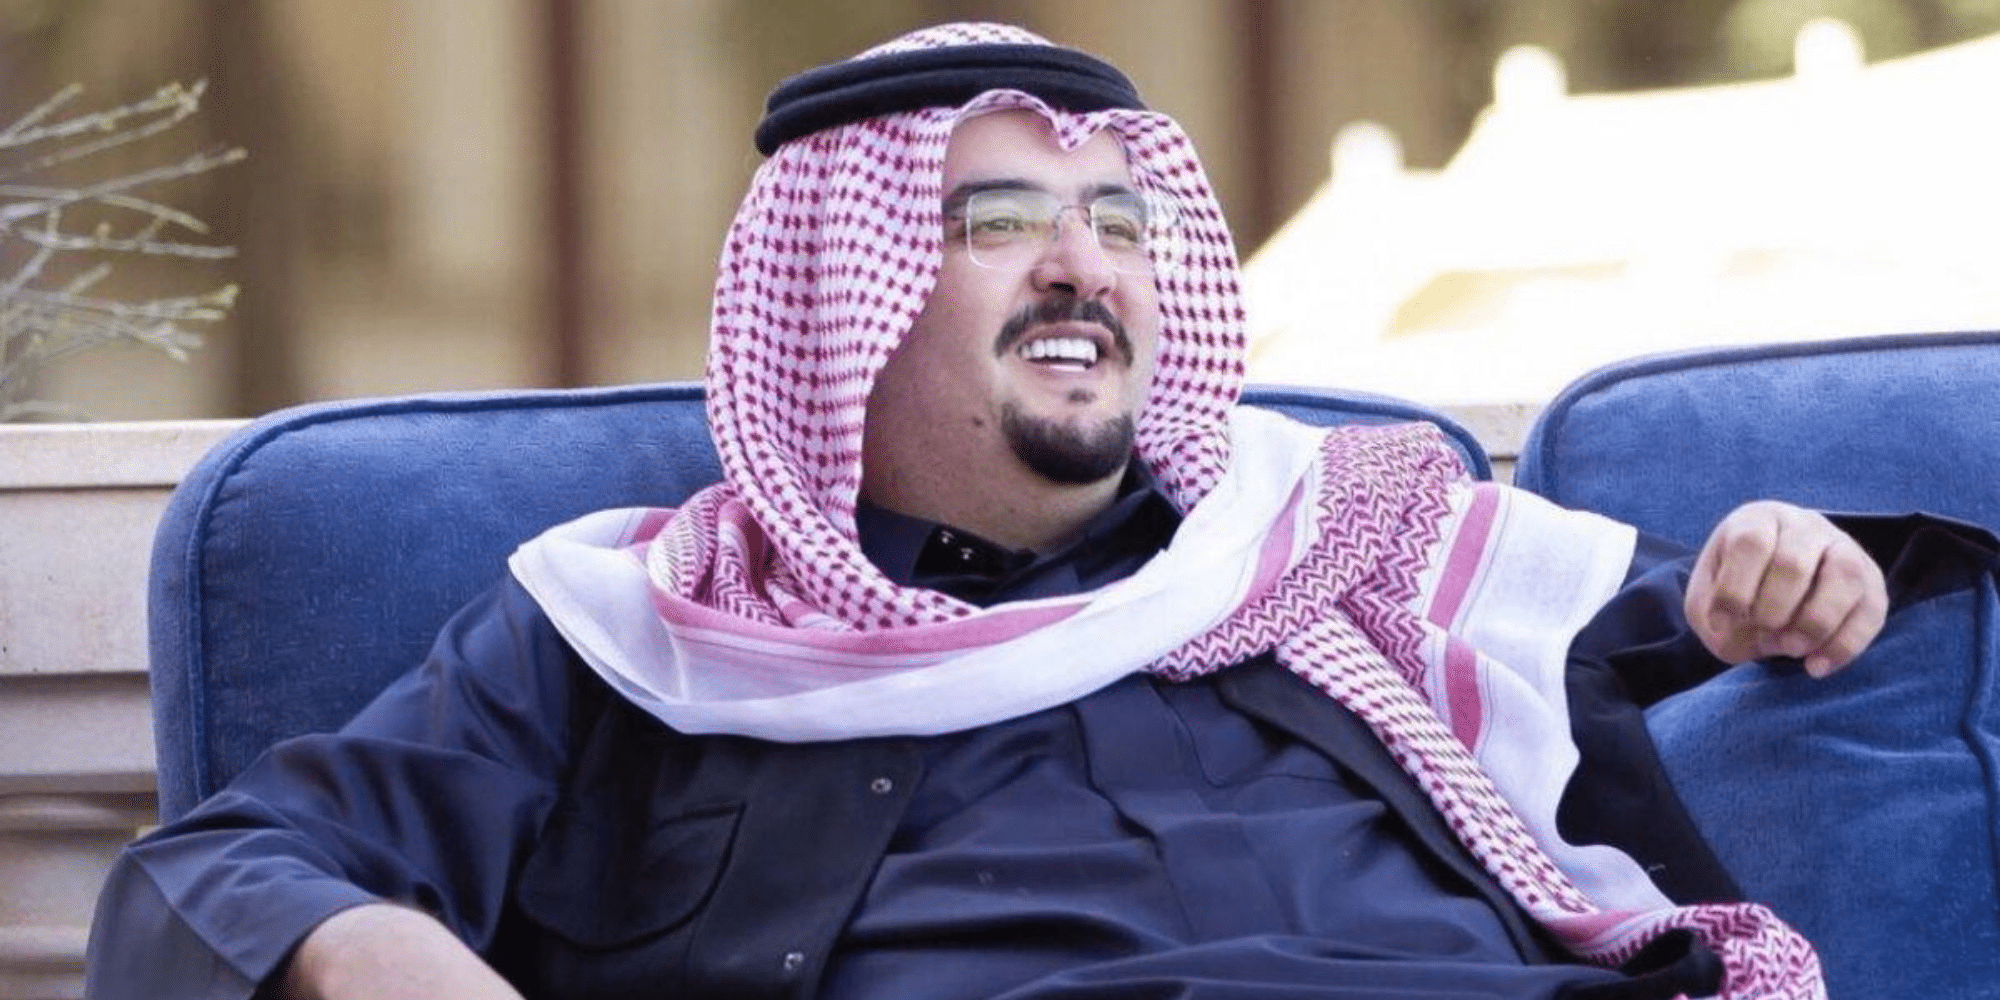 دعم الاسر والمحتاجين من الأمير عبد العزيز بن فهد لطلب مساعدات انسانية ومالية وعلاجية